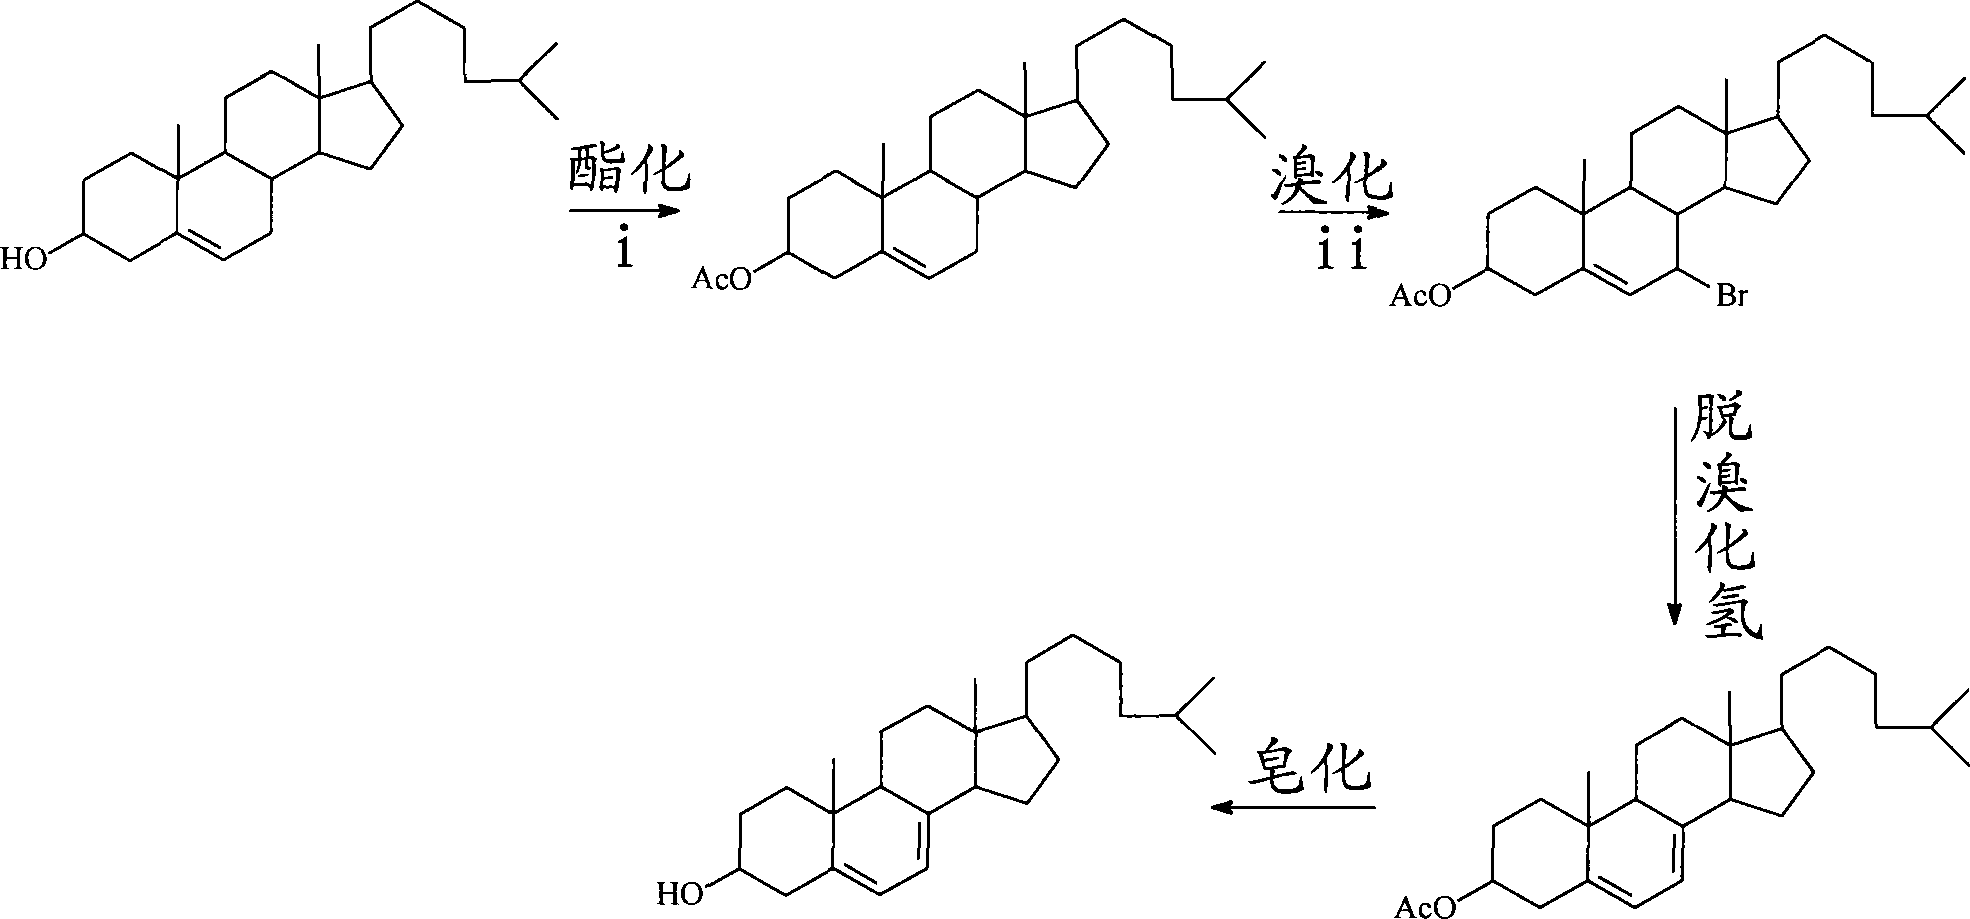 Preparation method for 7-dehydrochol esterol